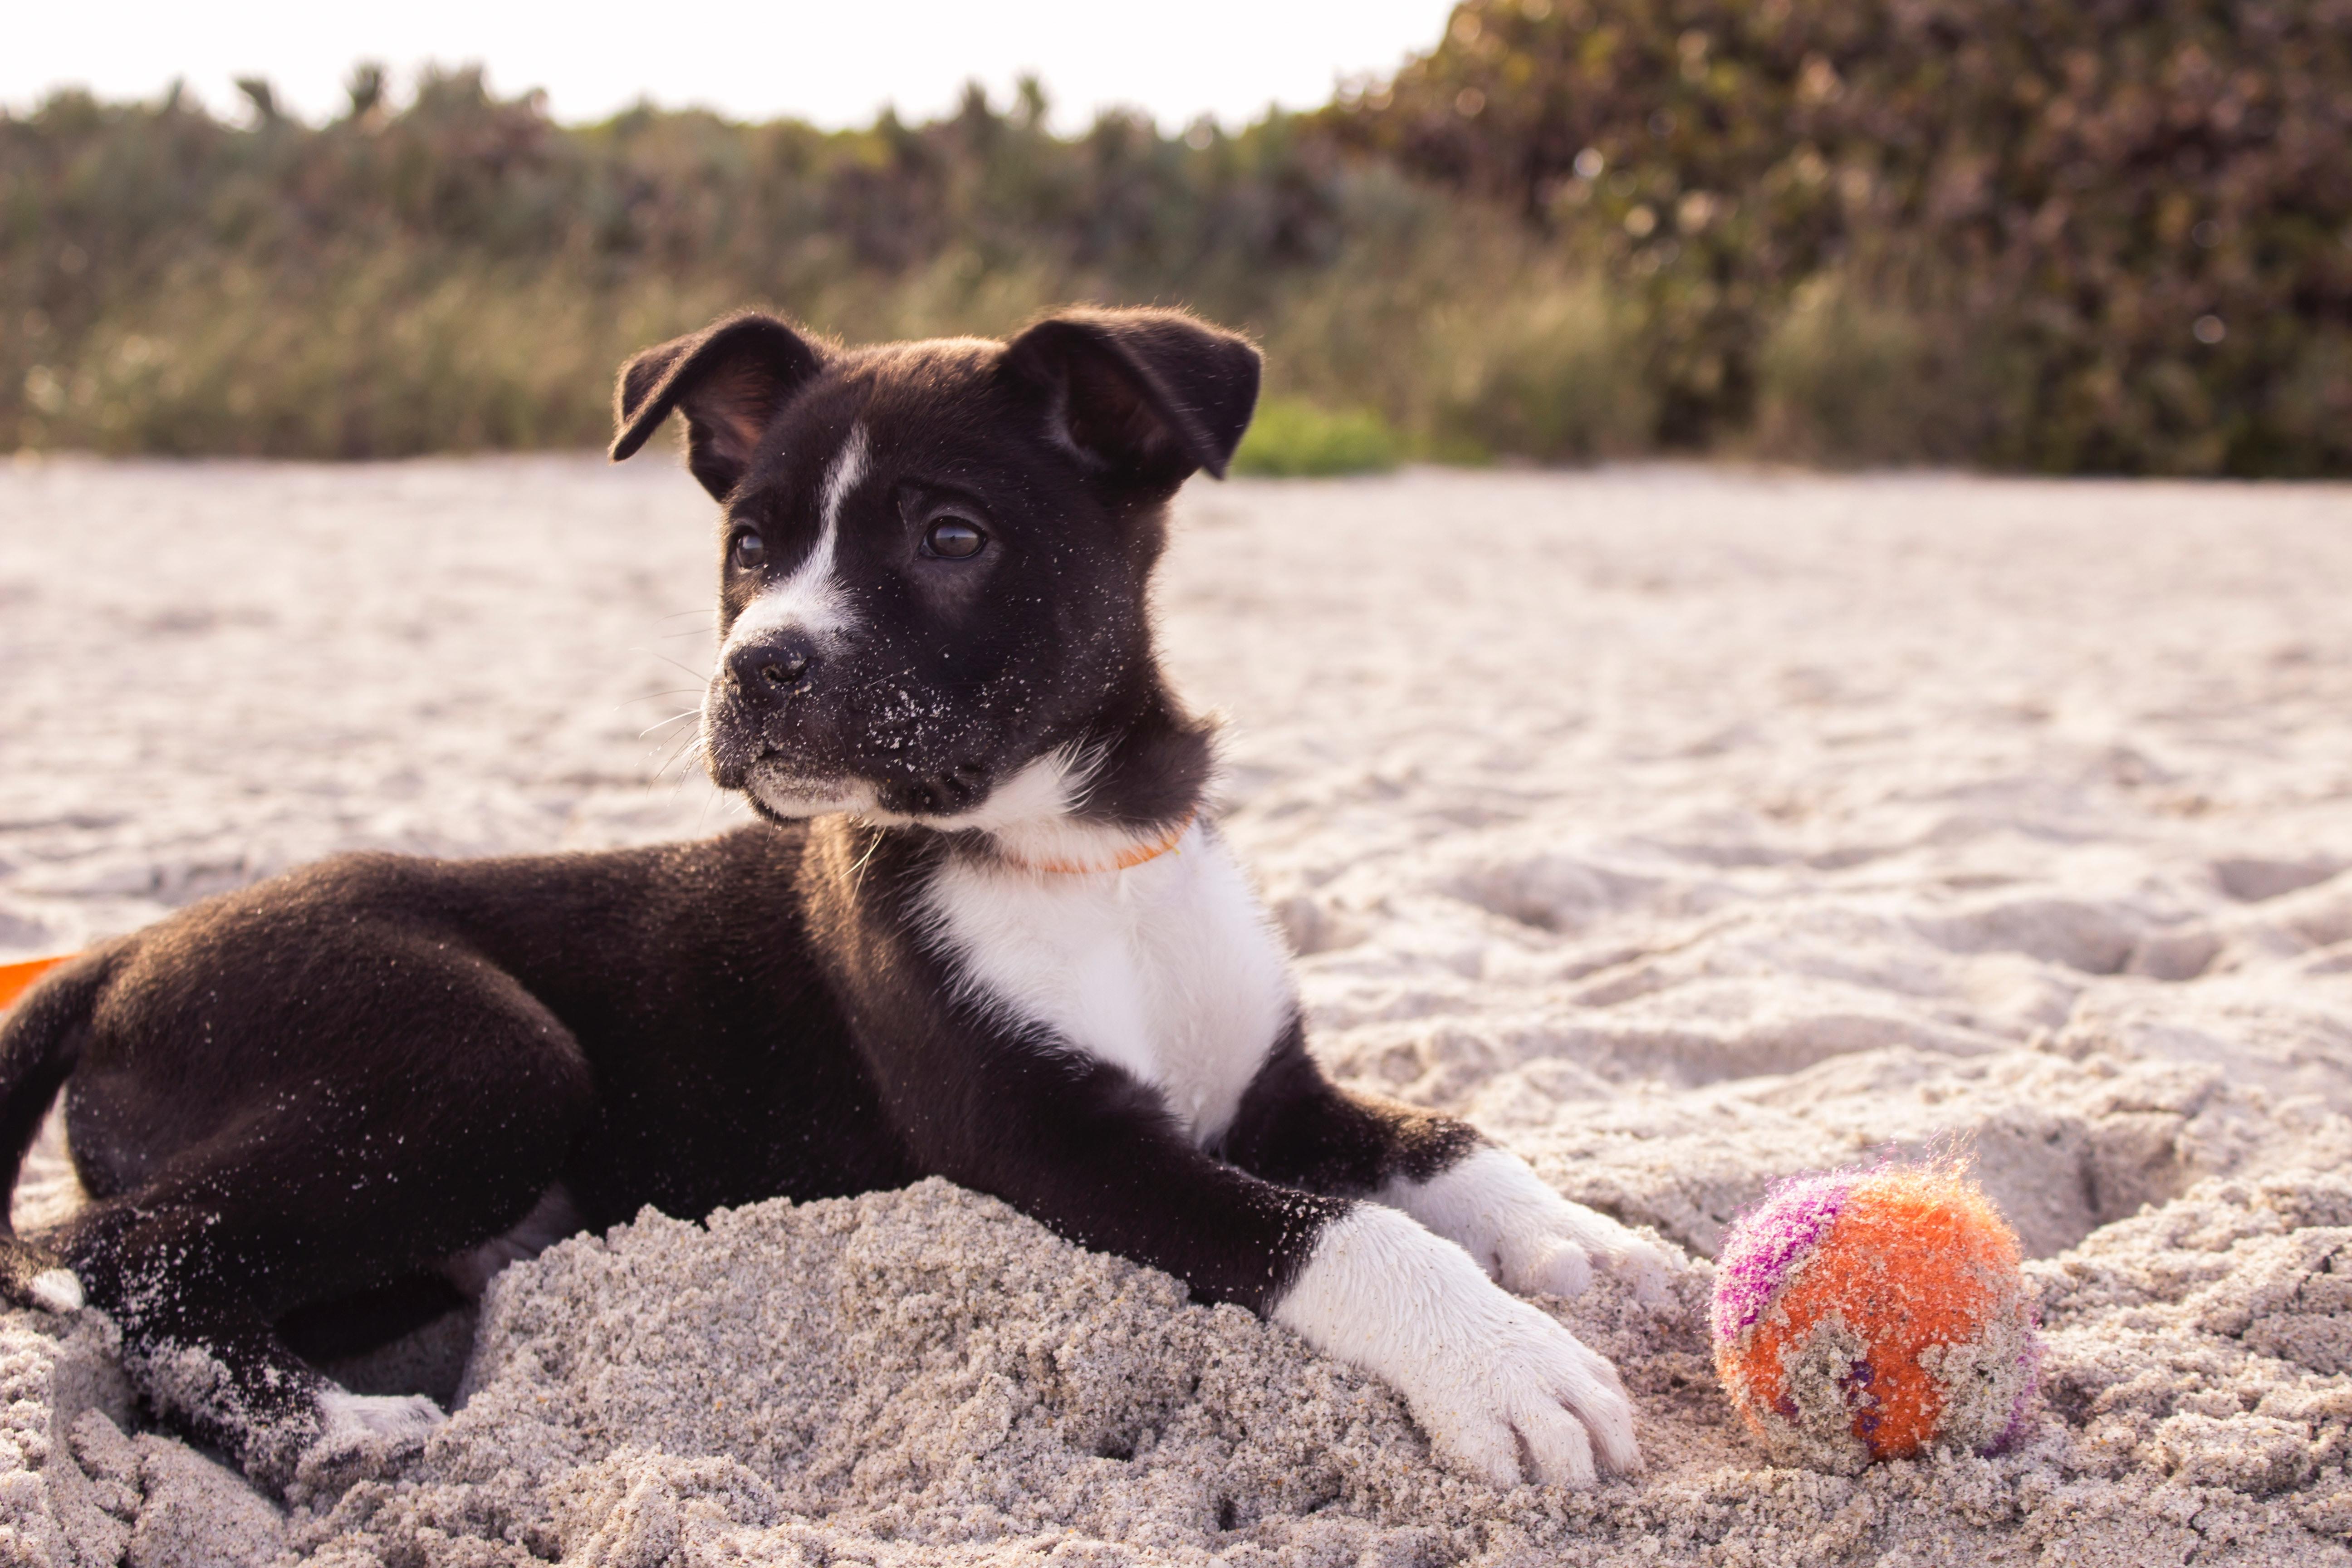 zwaarlijvigheid toxiciteit Station Op vakantie met je hond: hier zijn viervoeters welkom - Libelle